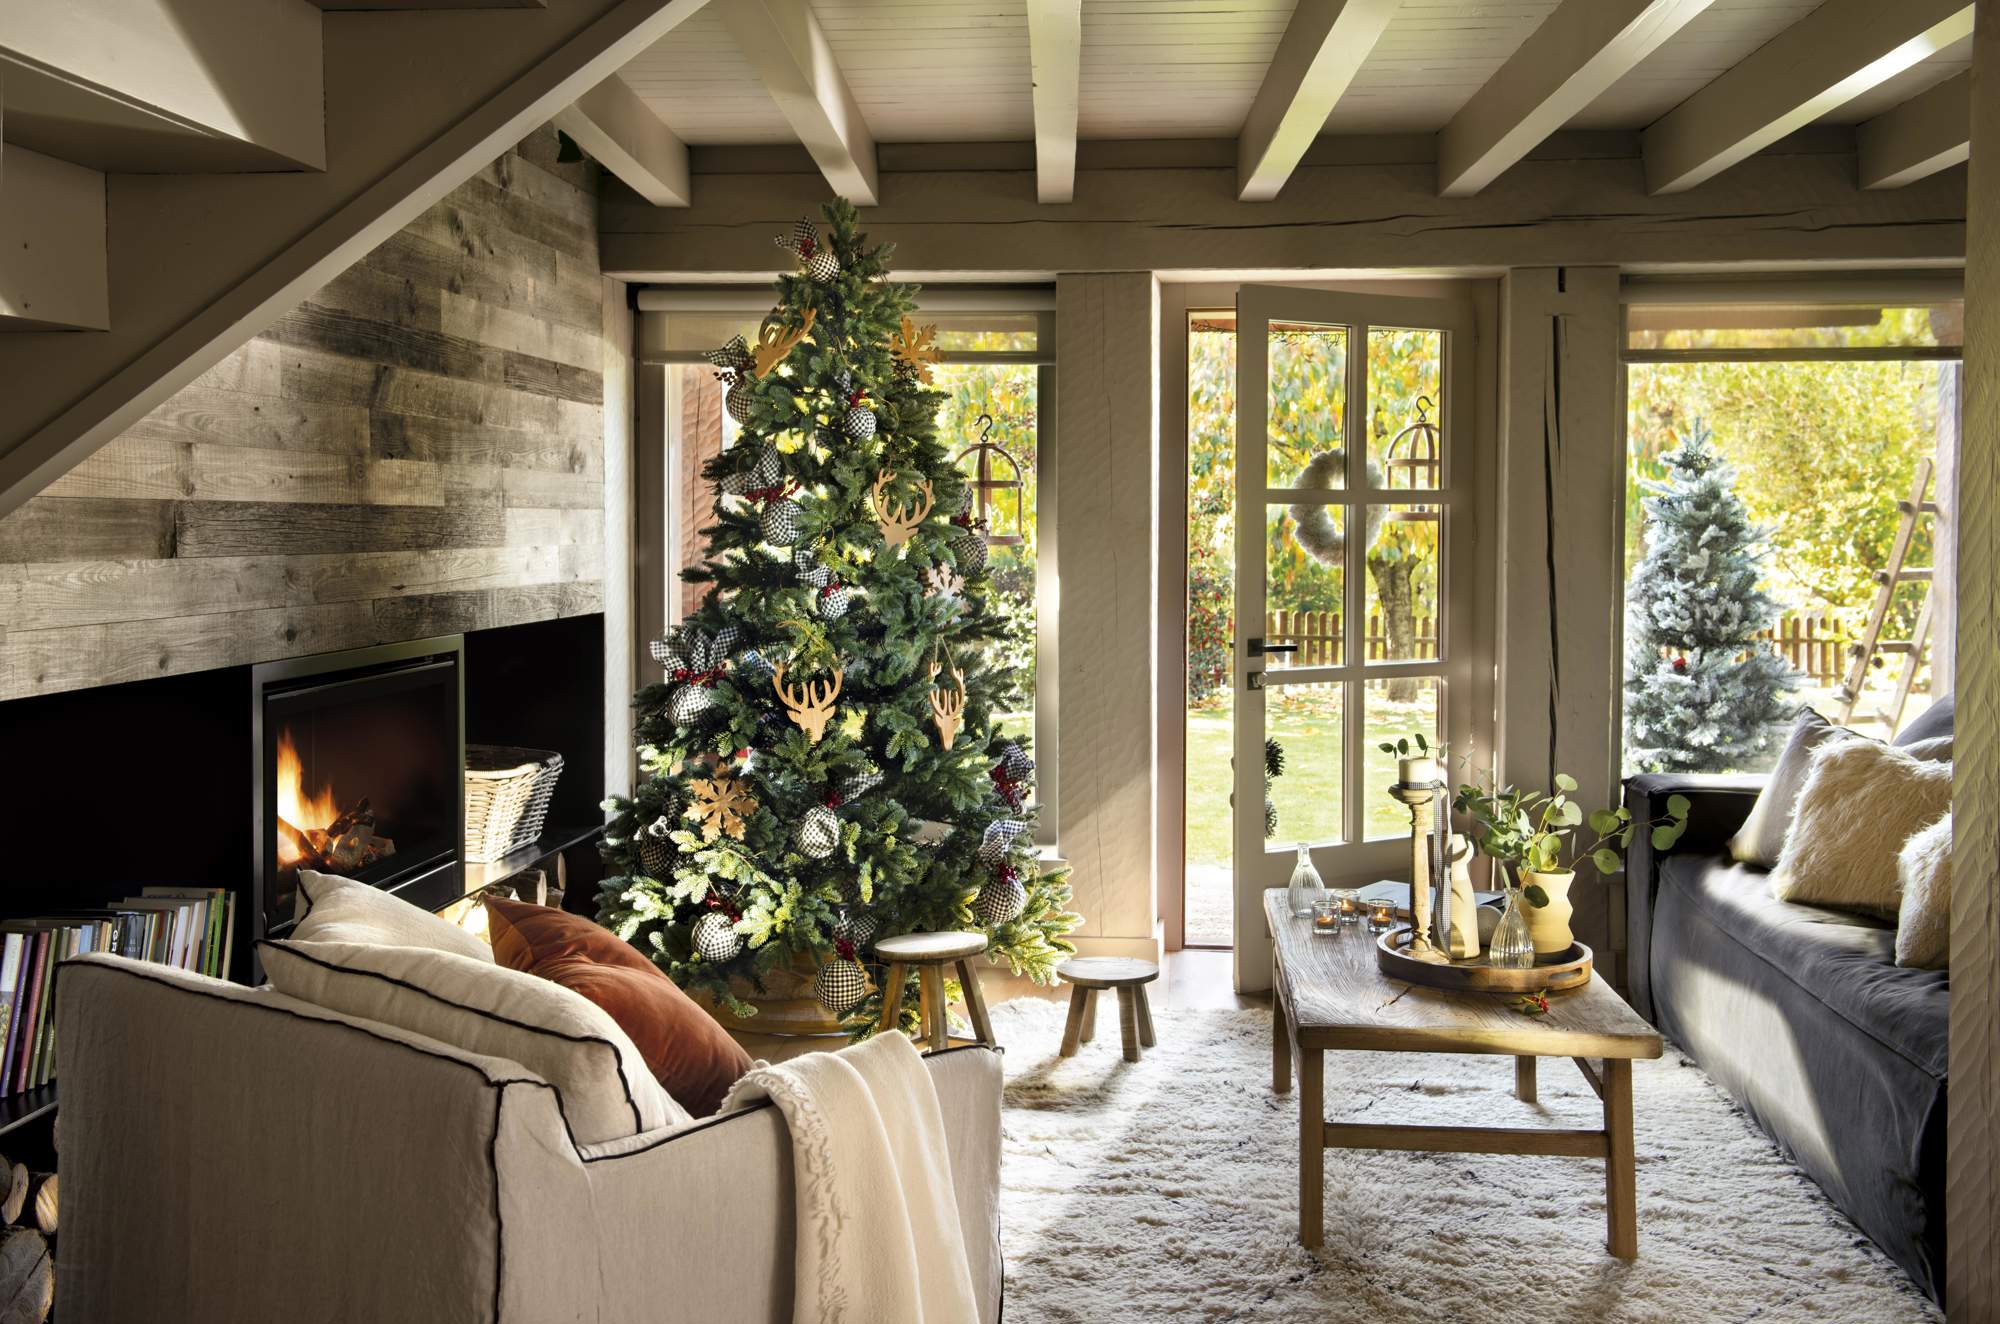 Salón rústico decorado de Navidad con árbol